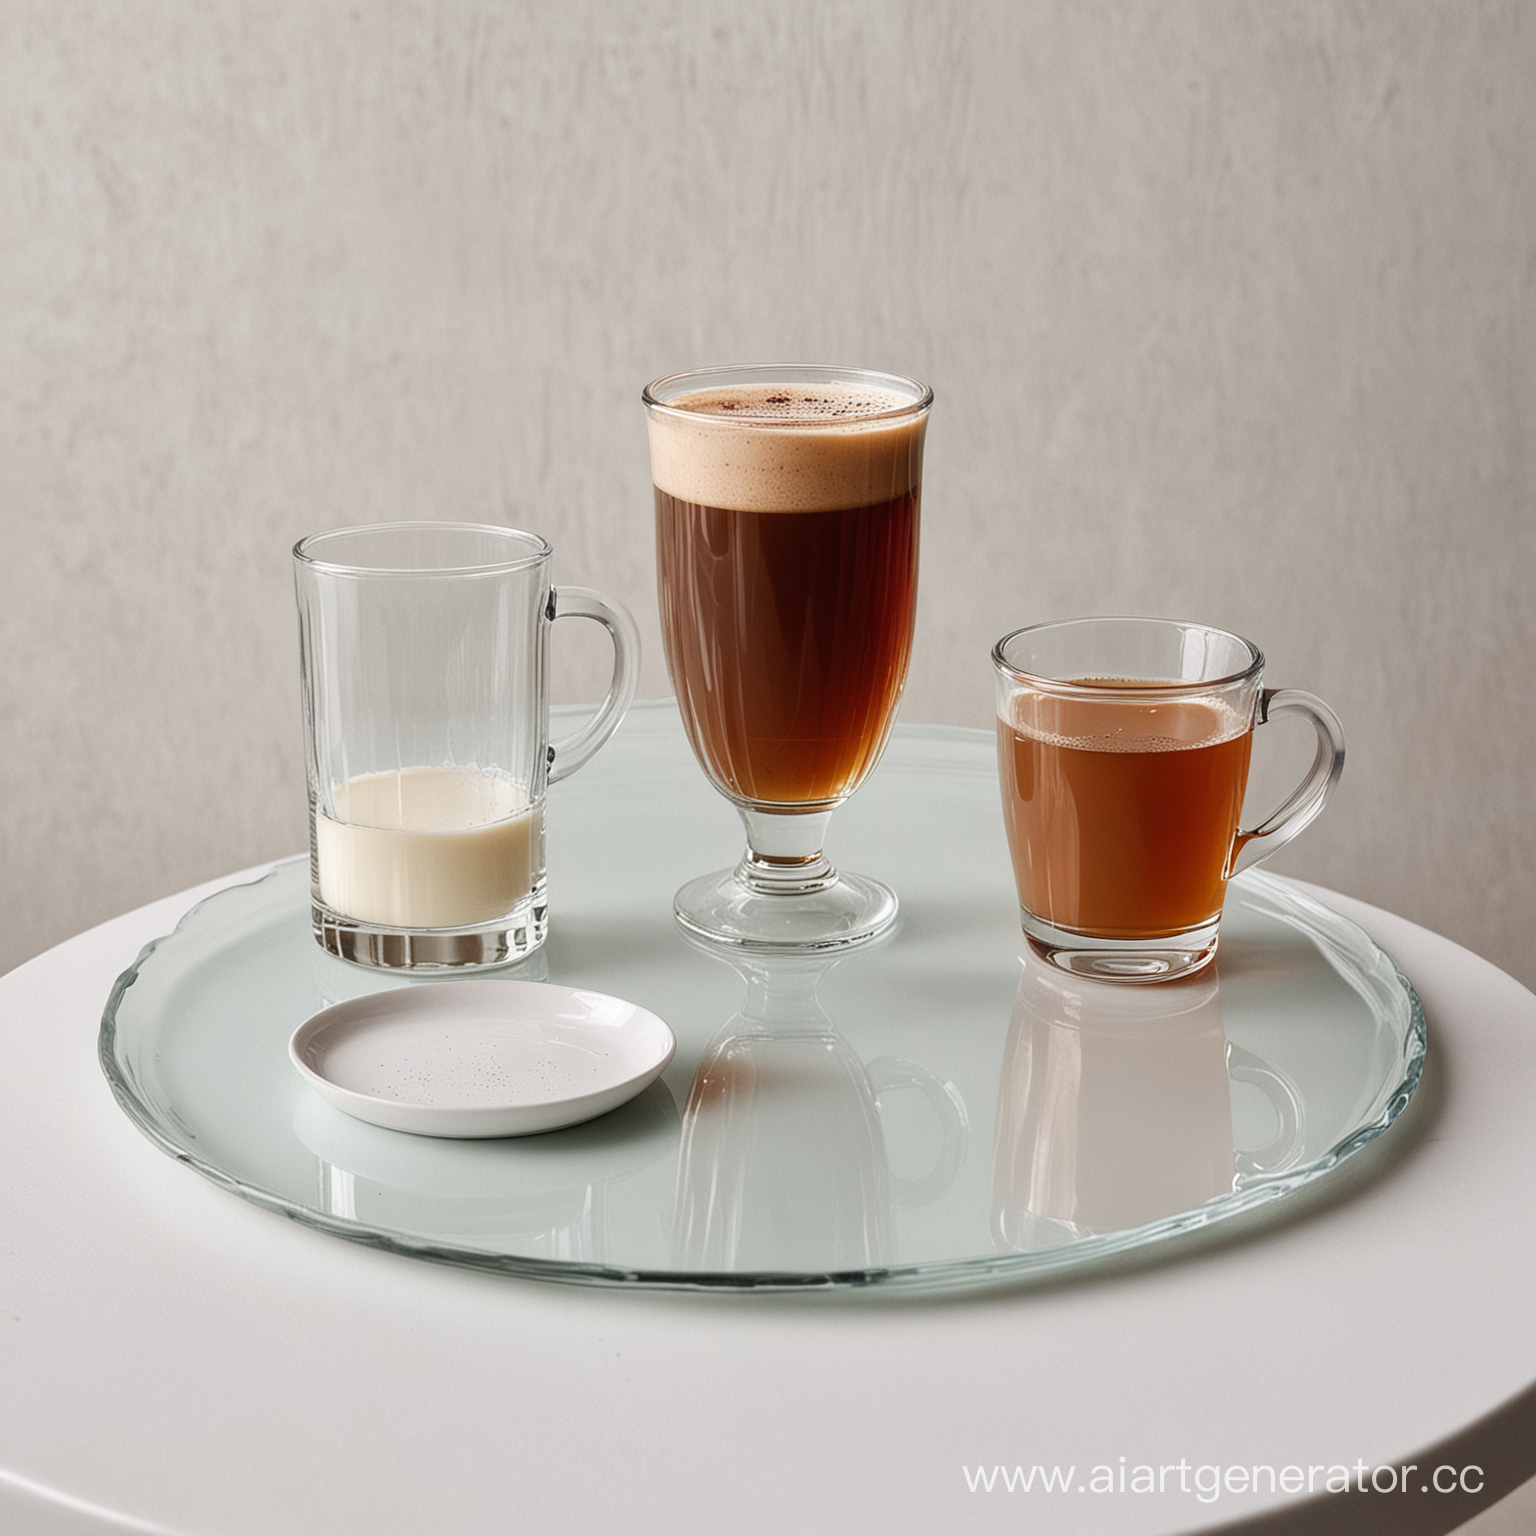 Стакан воды, кружка с кофе, высокая кружка скако, широкий сткан с чаем стоят нв белом столе